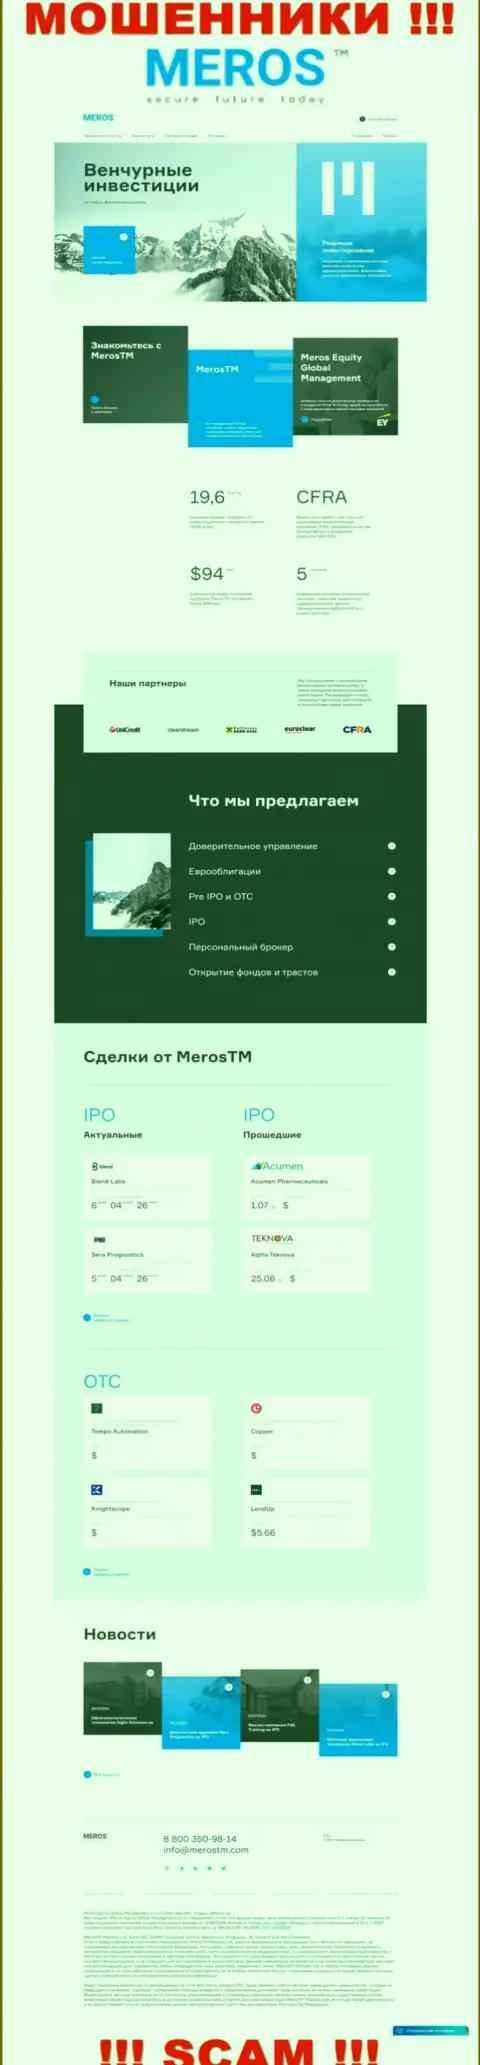 Разбор официального веб-портала мошенников MerosTM